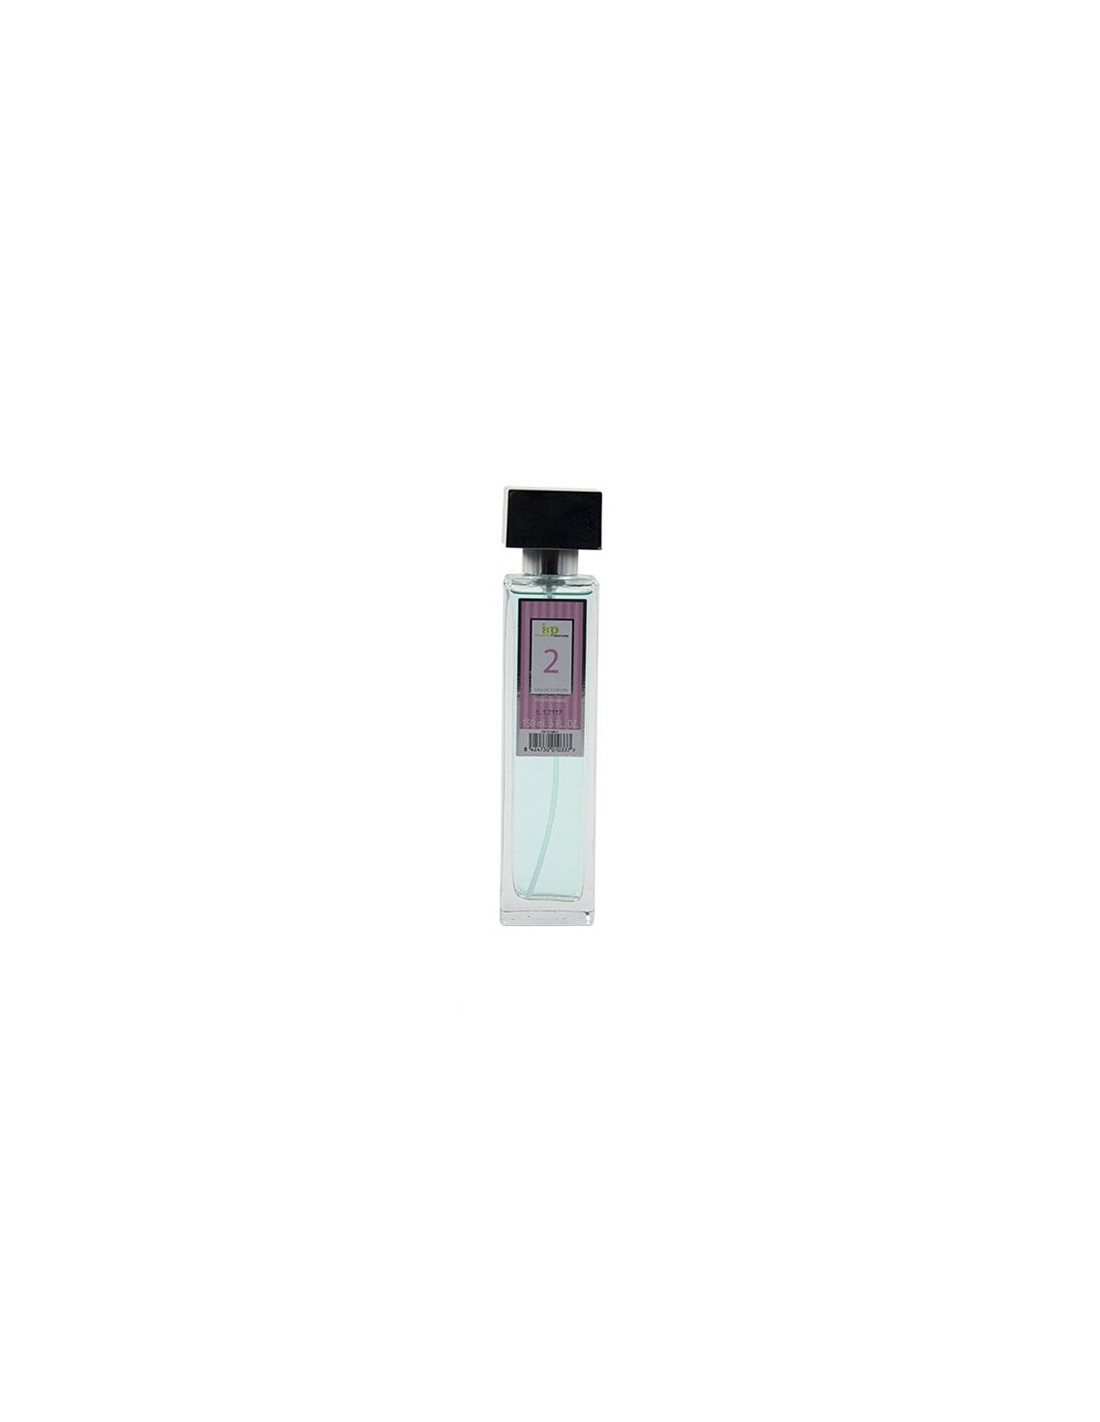 IAP Perfume Mujer N2 150ml